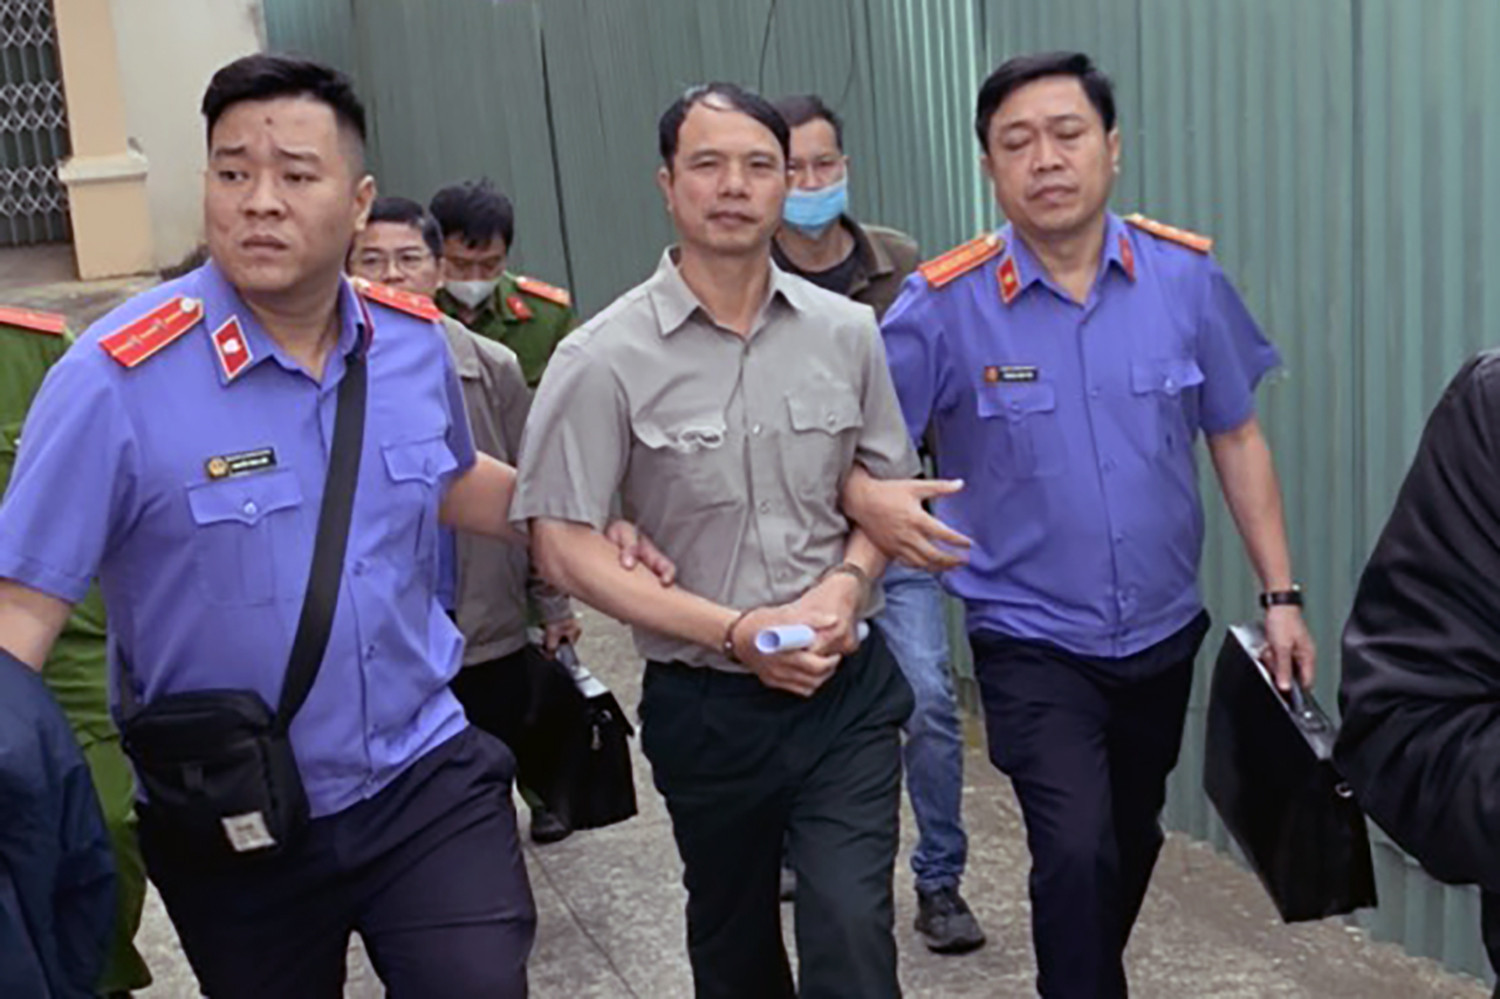 Ông Nguyễn Ngọc Thiện, Phó chi cục Thi hành án dân sự TP Đà Lạt bị bắt, hồi tháng 10. Ảnh: A.T